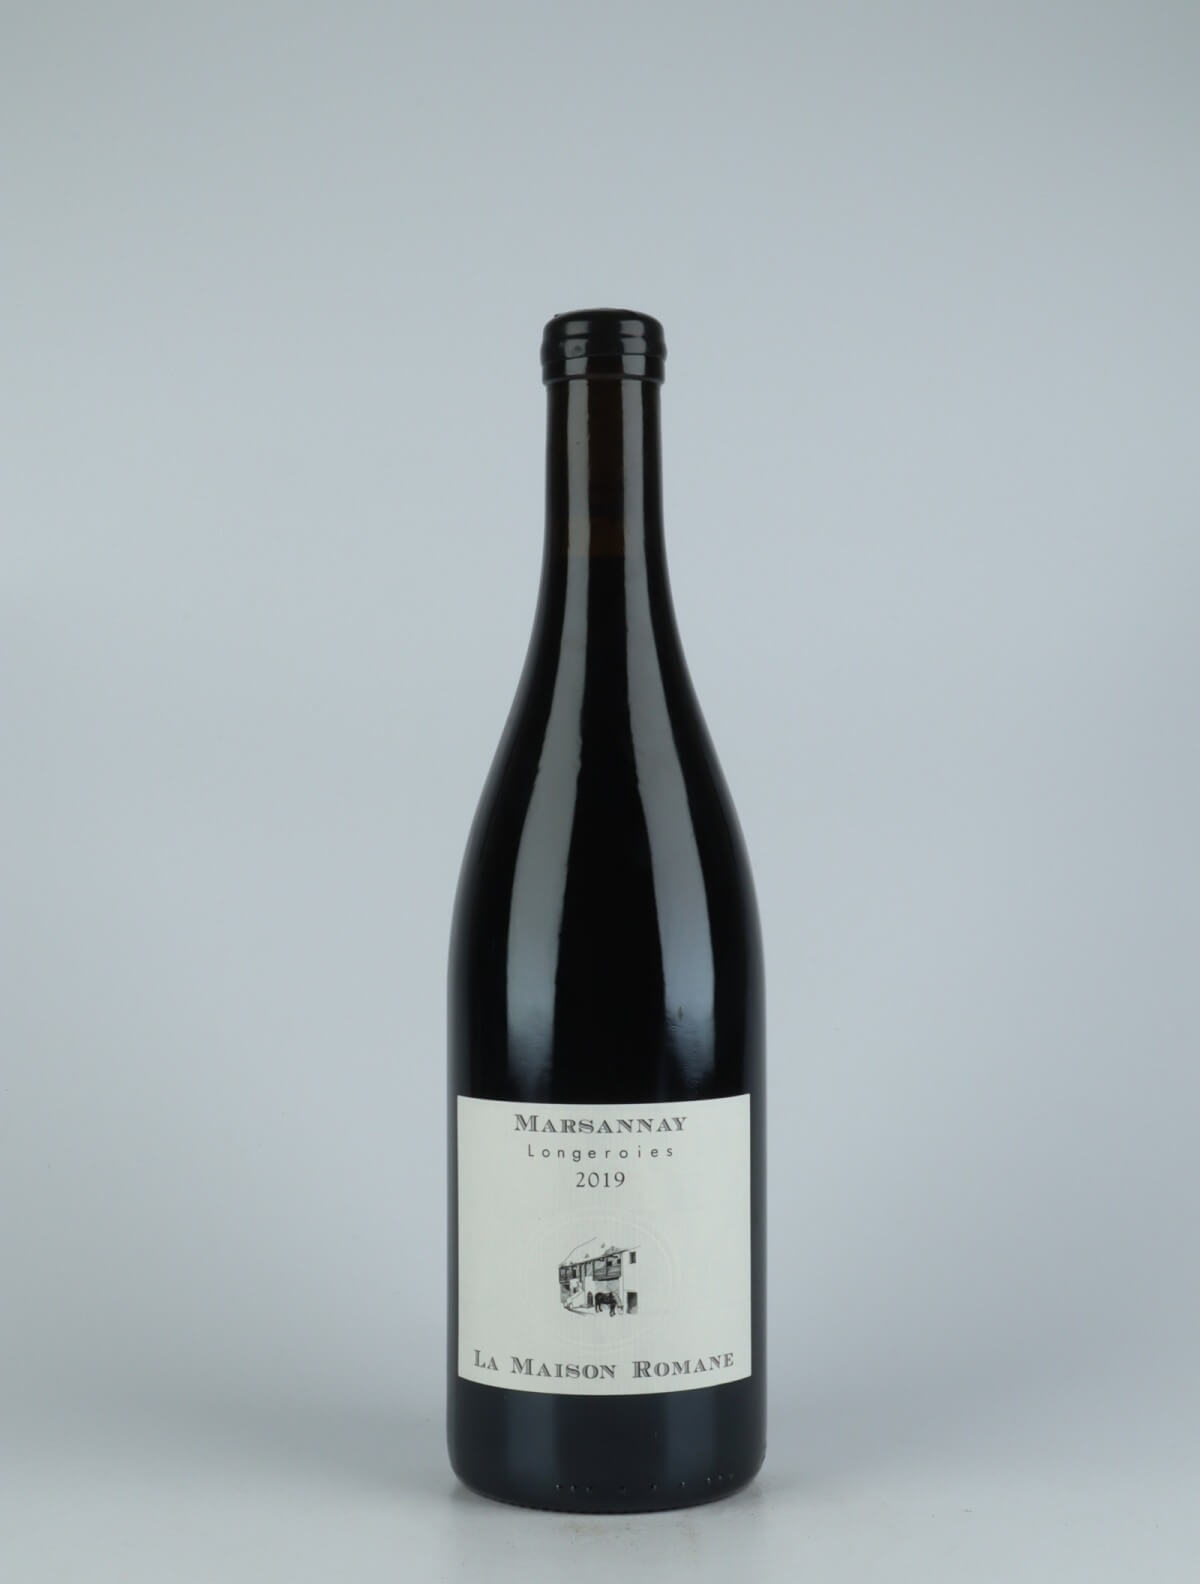 A bottle 2019 Marsannay - Longeroies Red wine from La Maison Romane, Burgundy in France